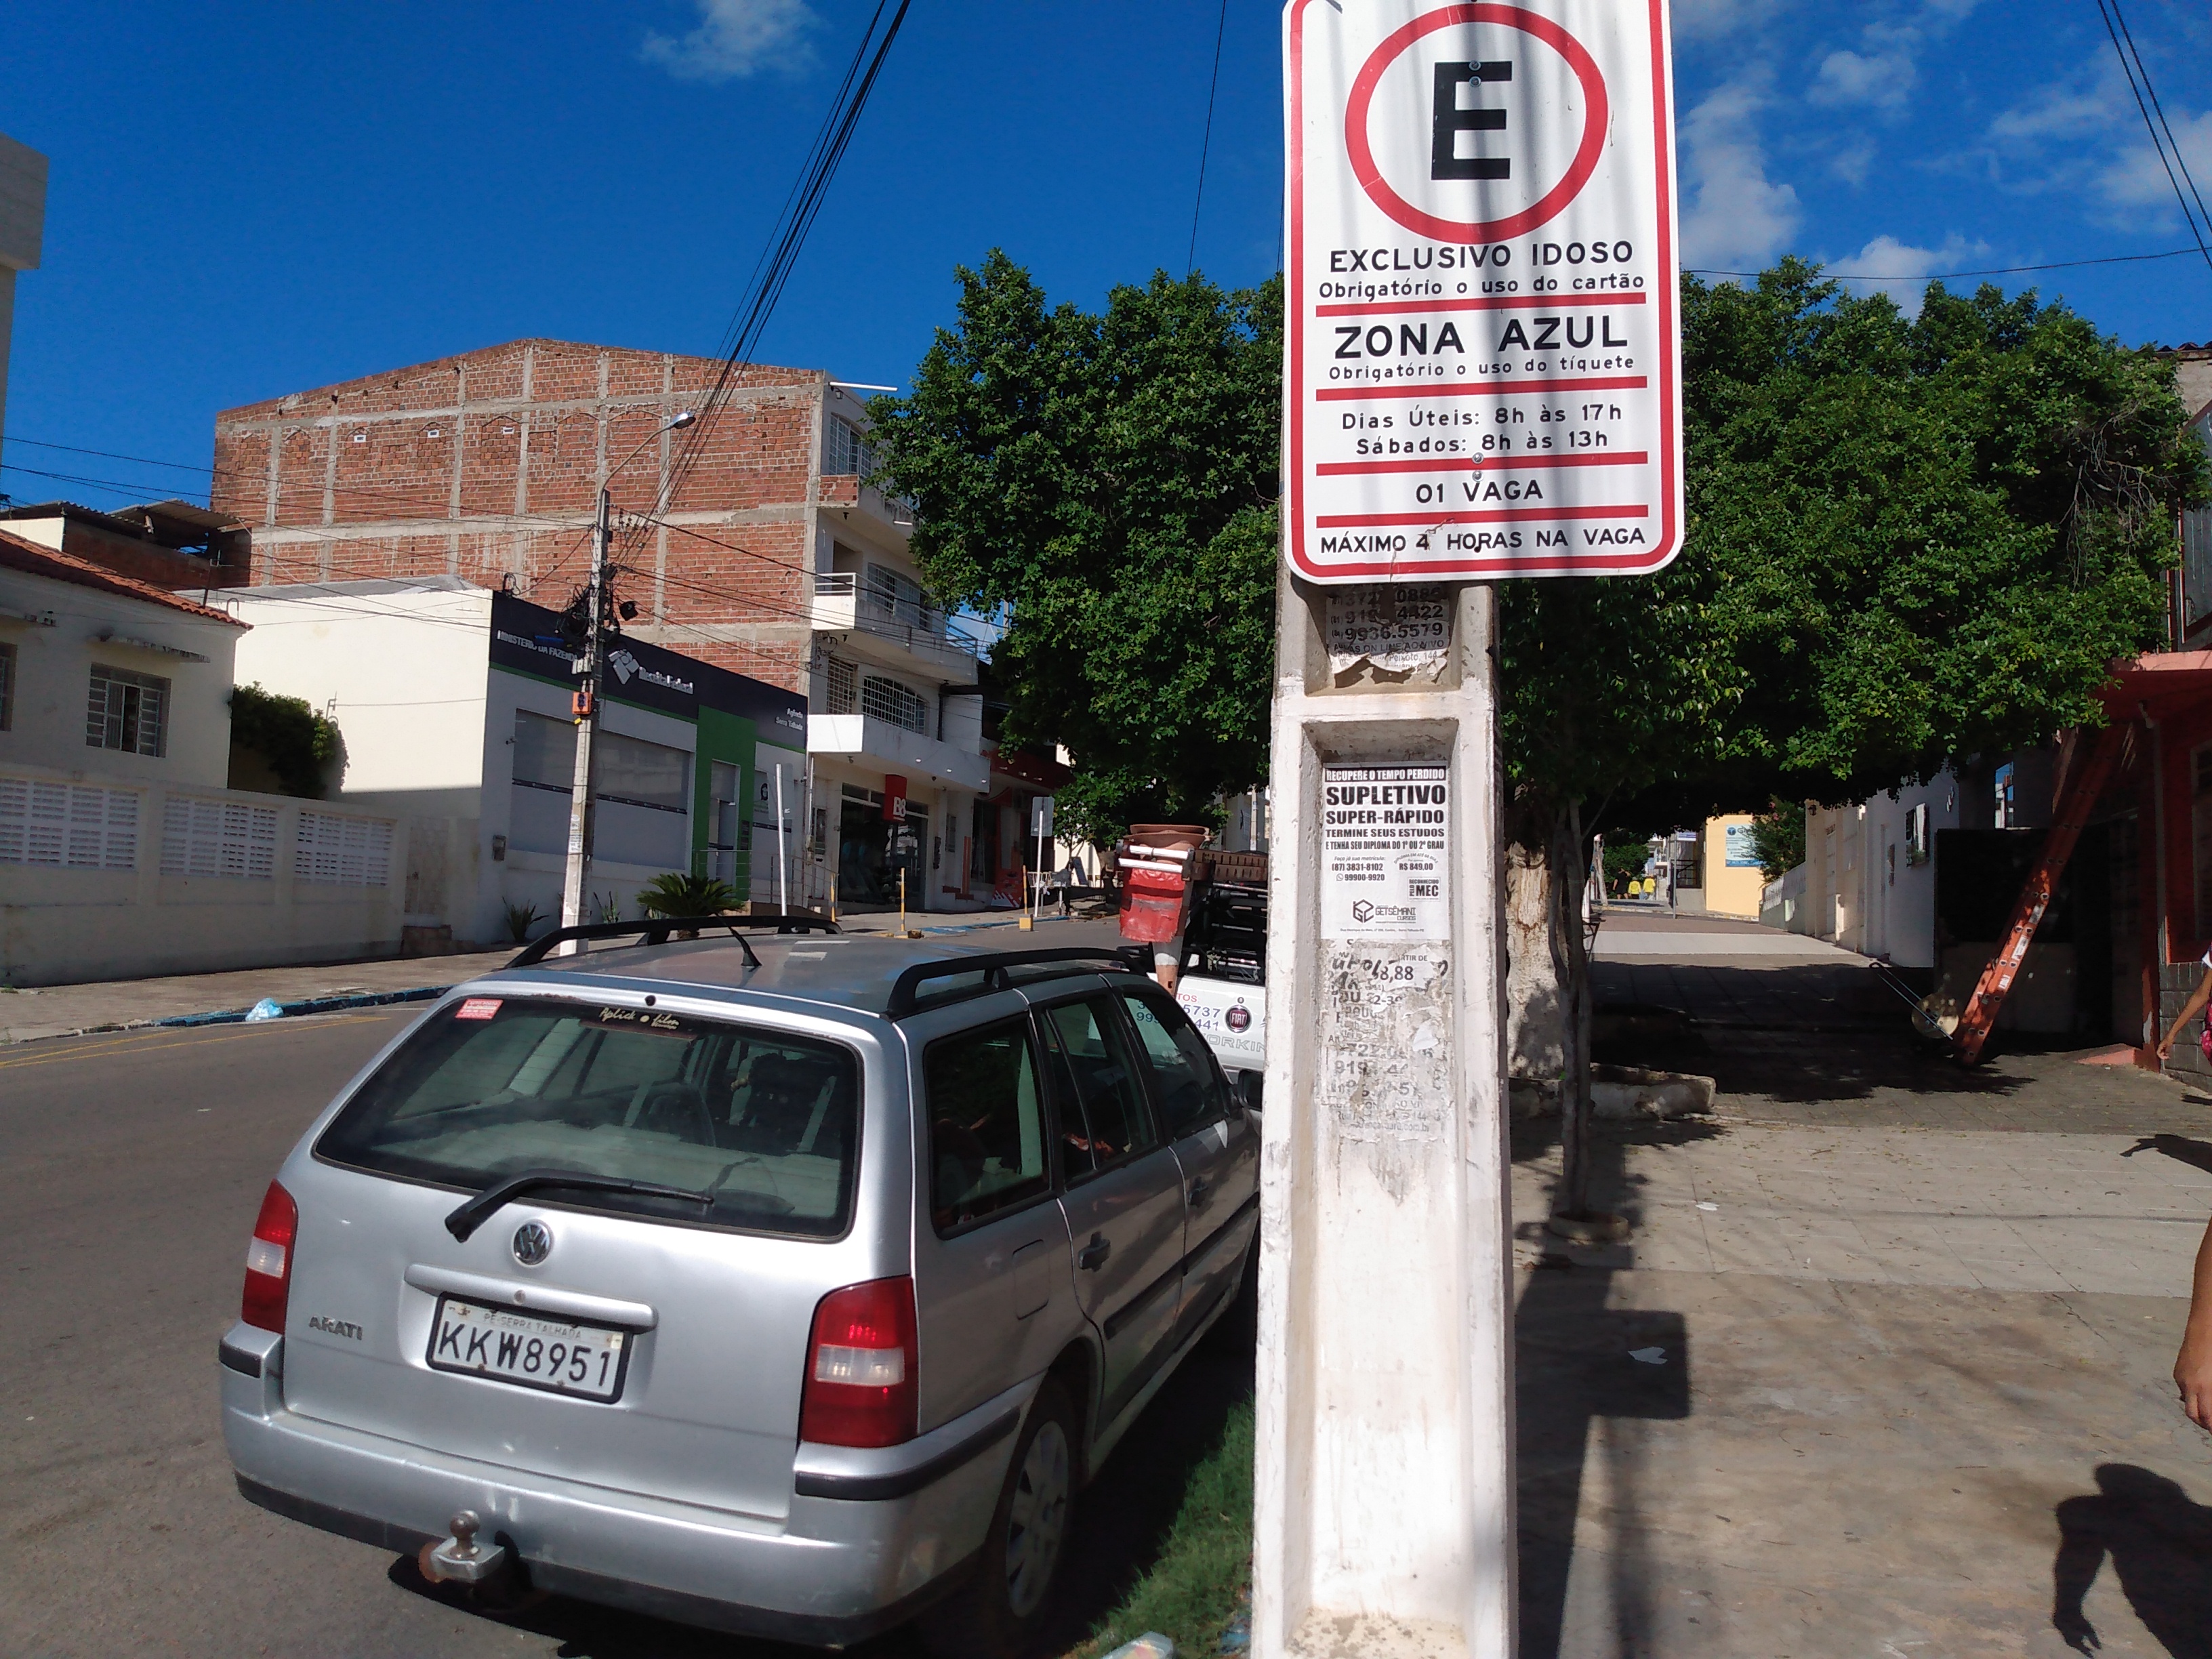 Idoso é multado na zona azul em Serra Talhada